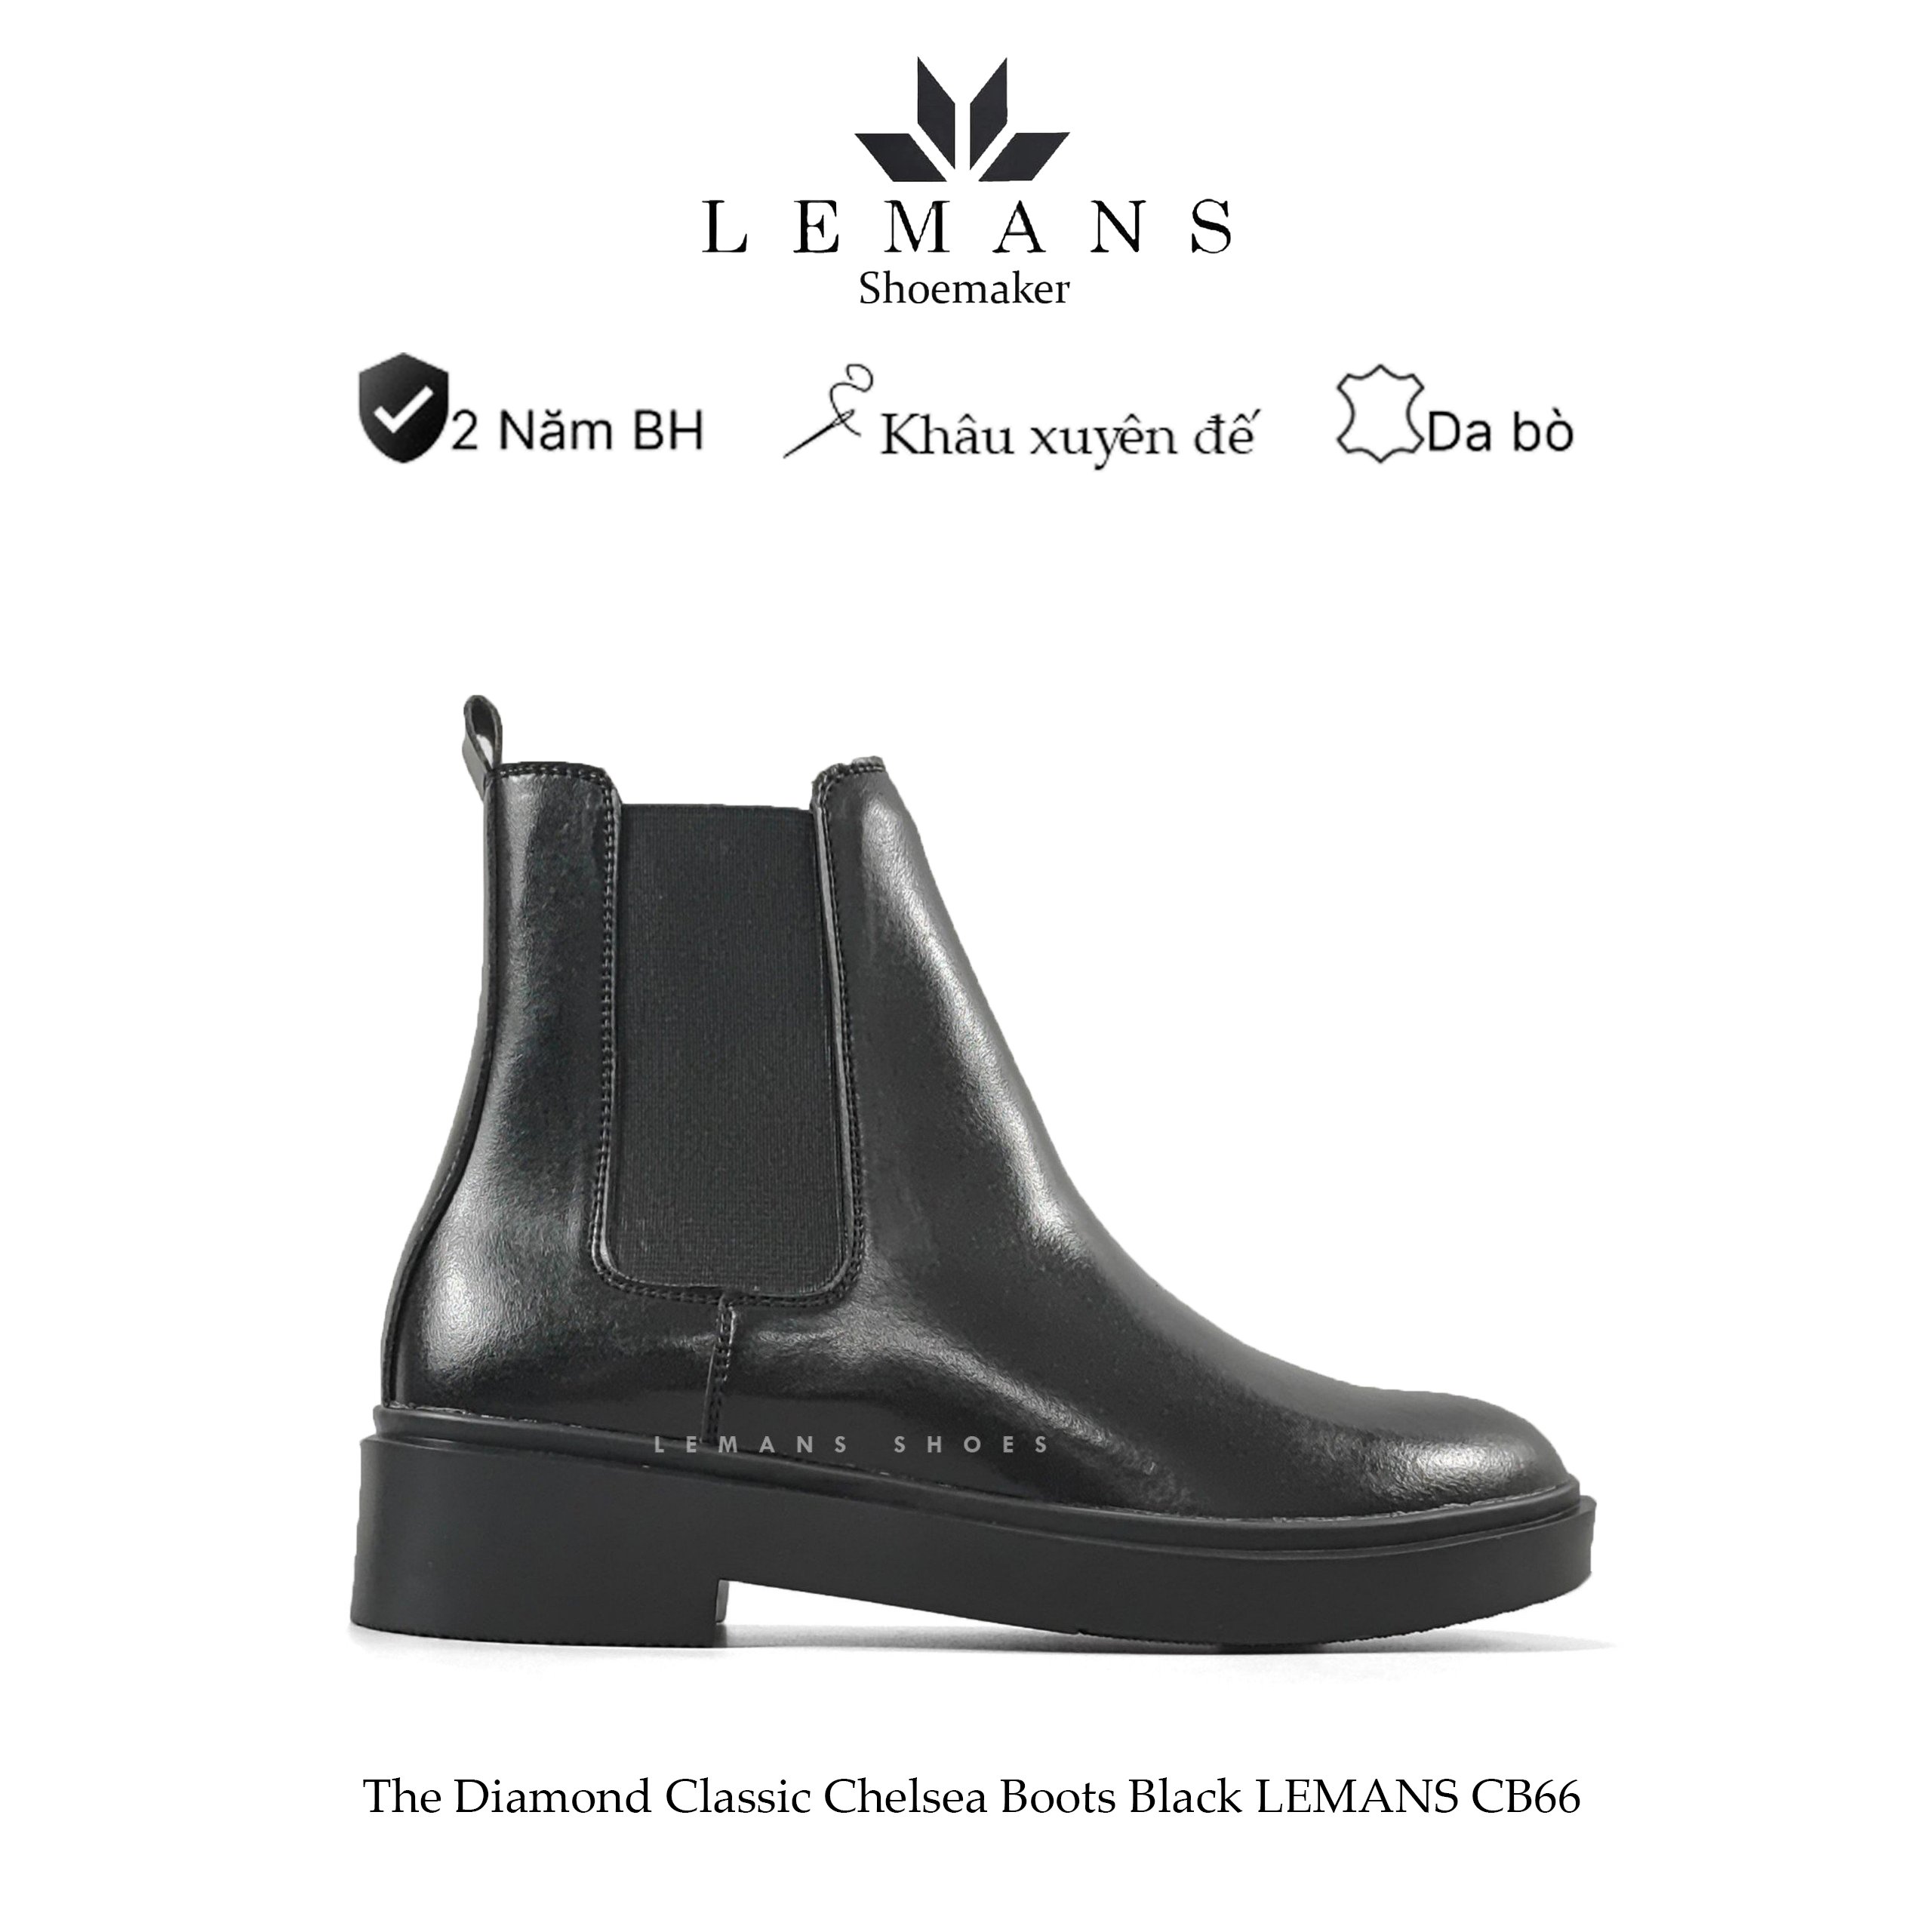 Giày da bò Chelsea Boots Black LEMANS CB66, đế lemans cao 4cm, boot nam chelsea boot nam, bảo hành 24 tháng